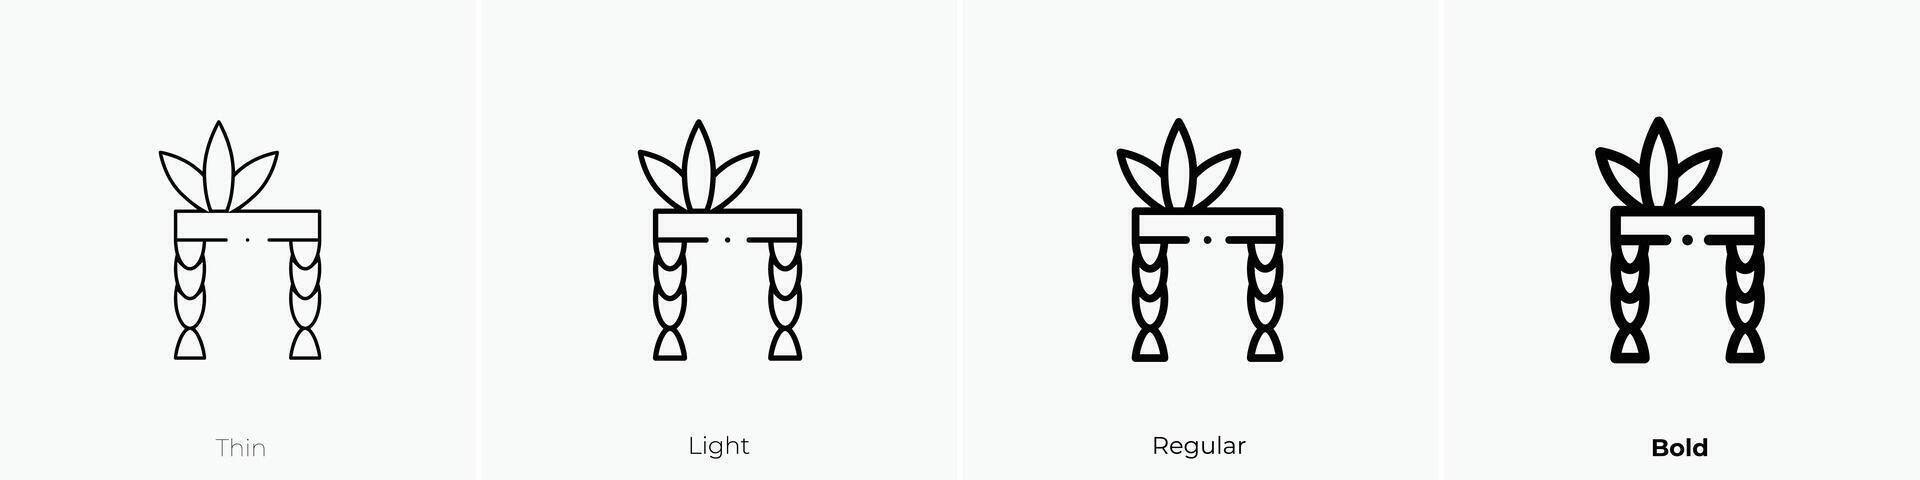 nativo americano ícone. afinar, luz, regular e negrito estilo Projeto isolado em branco fundo vetor